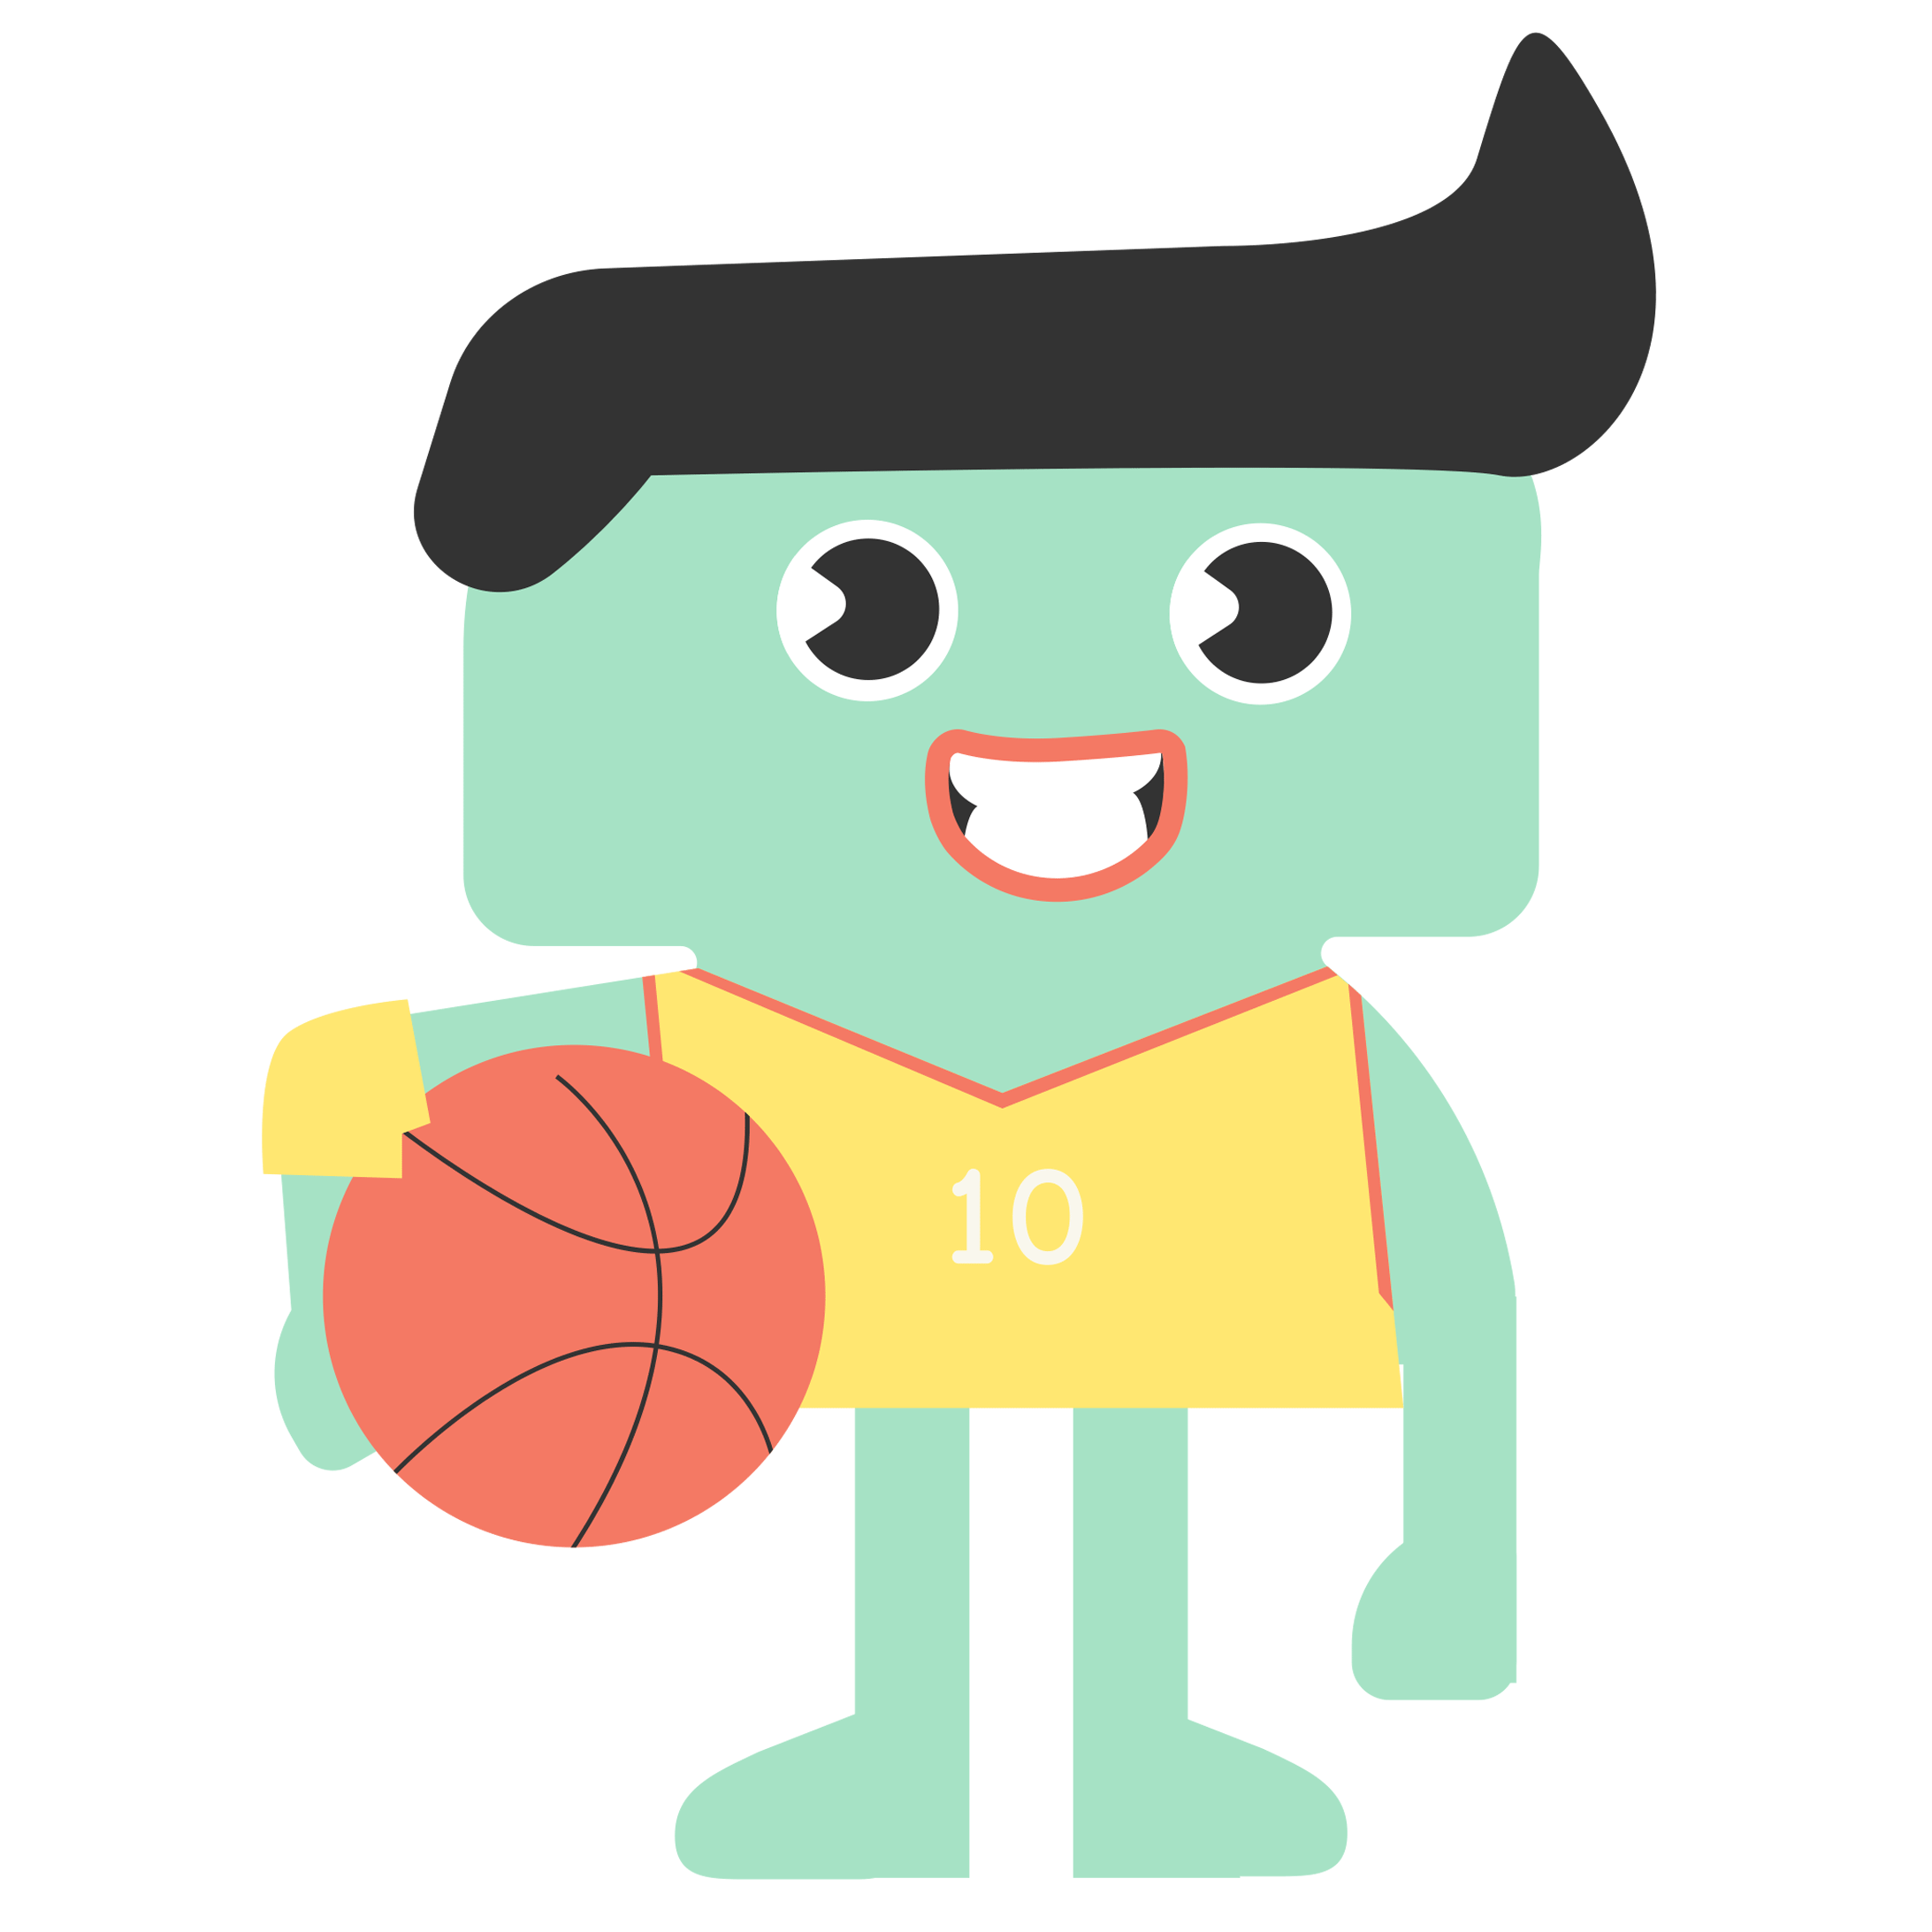 4. basketball